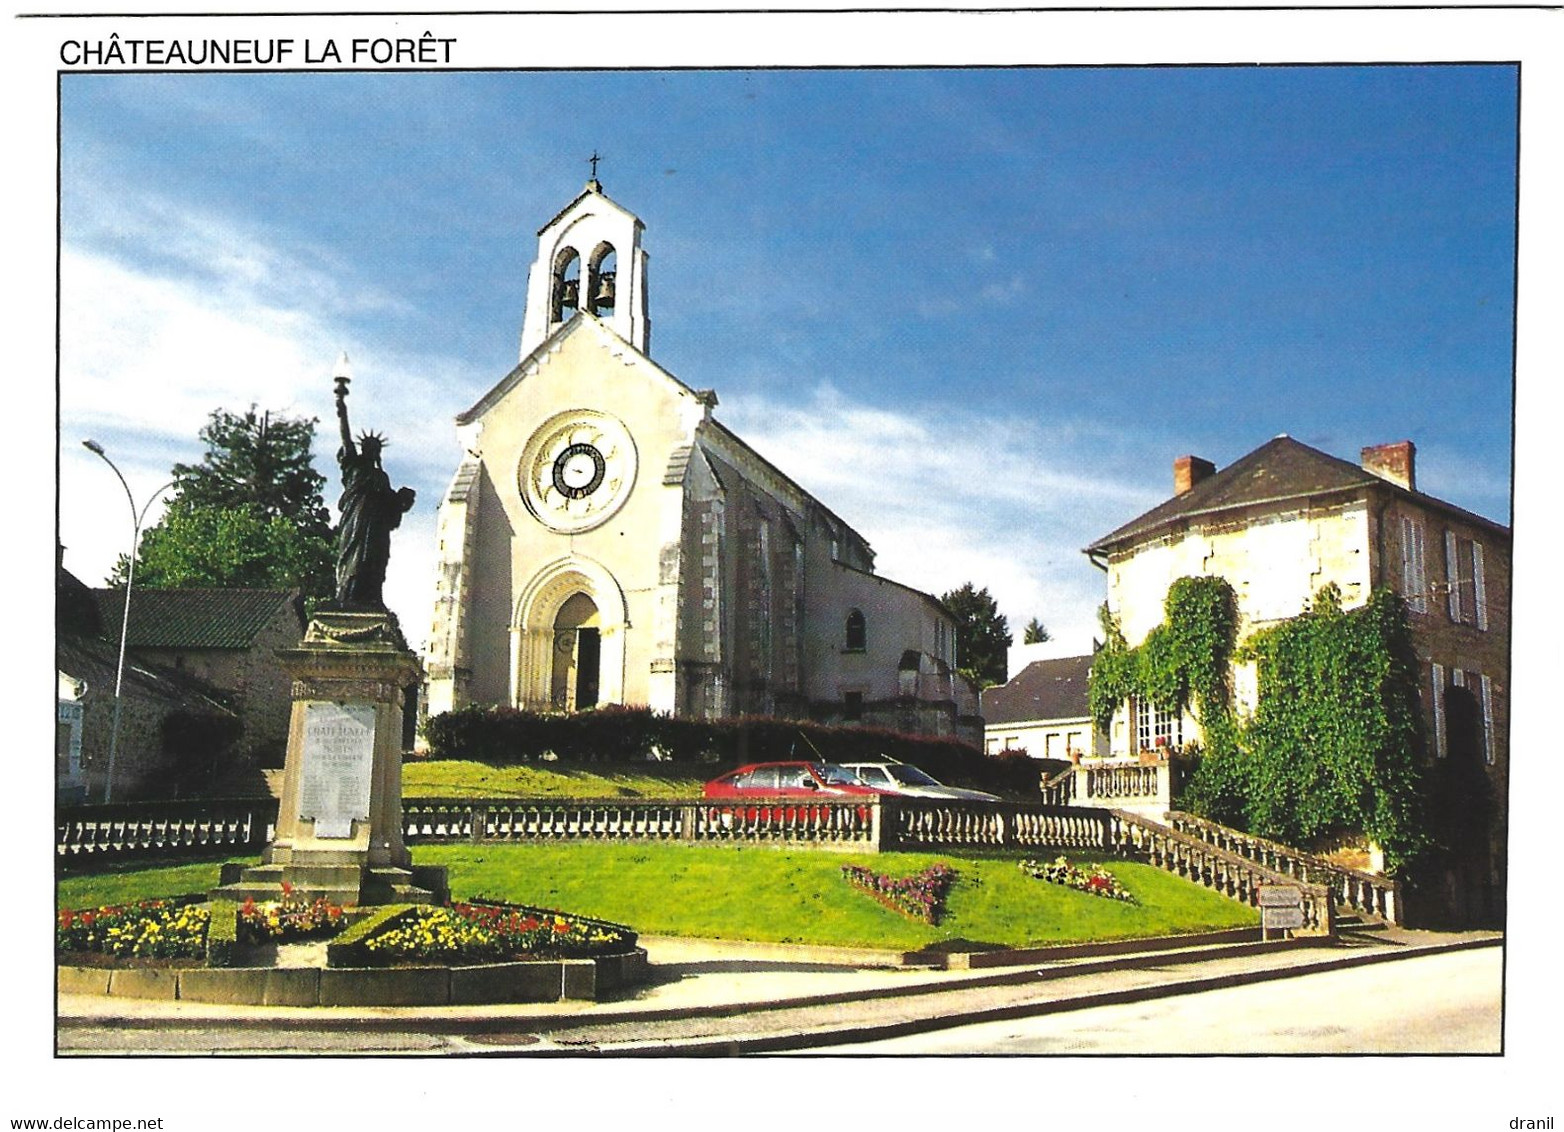 87 - Haute-Vienne - CHATEAU NEUF LA FORET - L'église Et La Statue De La Liberté - Chateauneuf La Foret